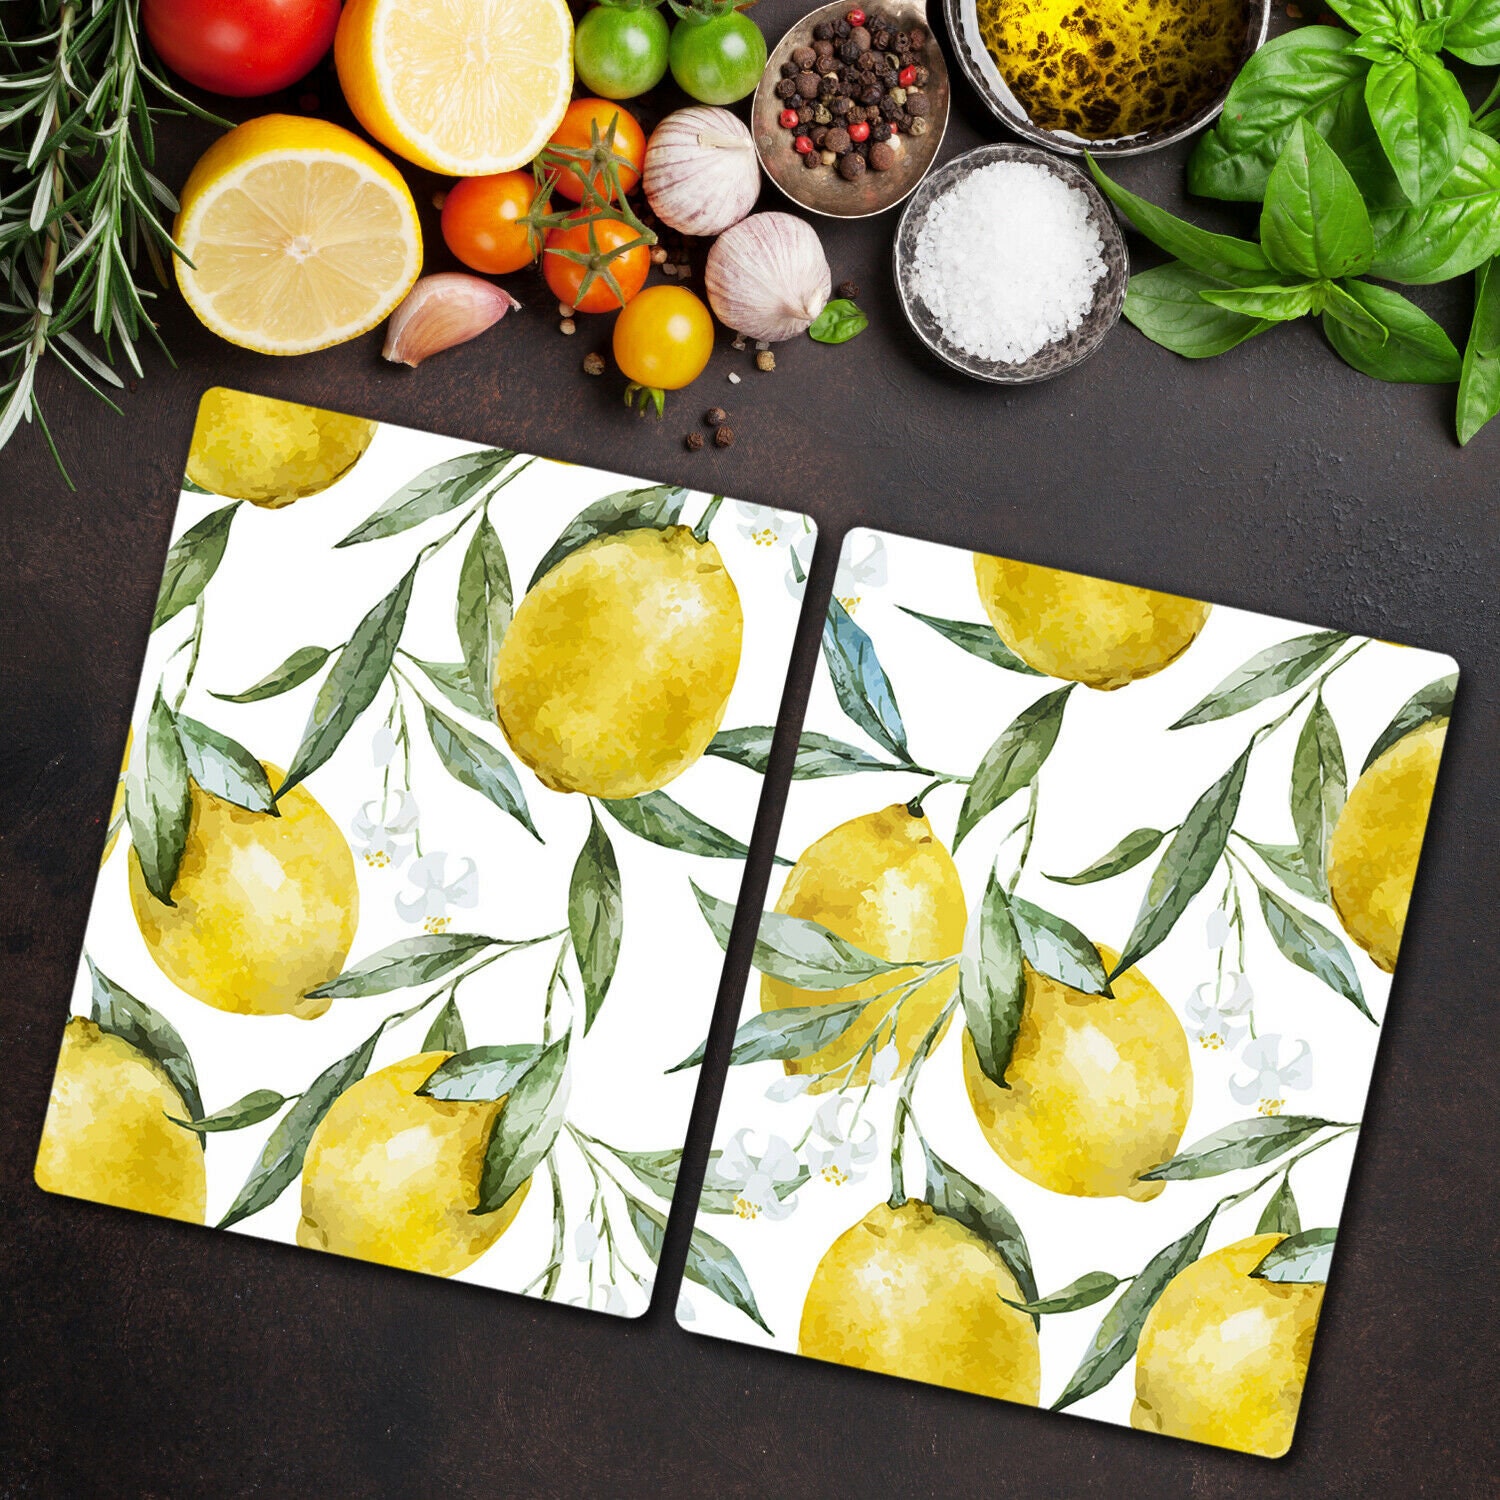 Jo e Joie Lemon Cutting Board Fruit Inspired Modern Kitchen Yellow for sale  online